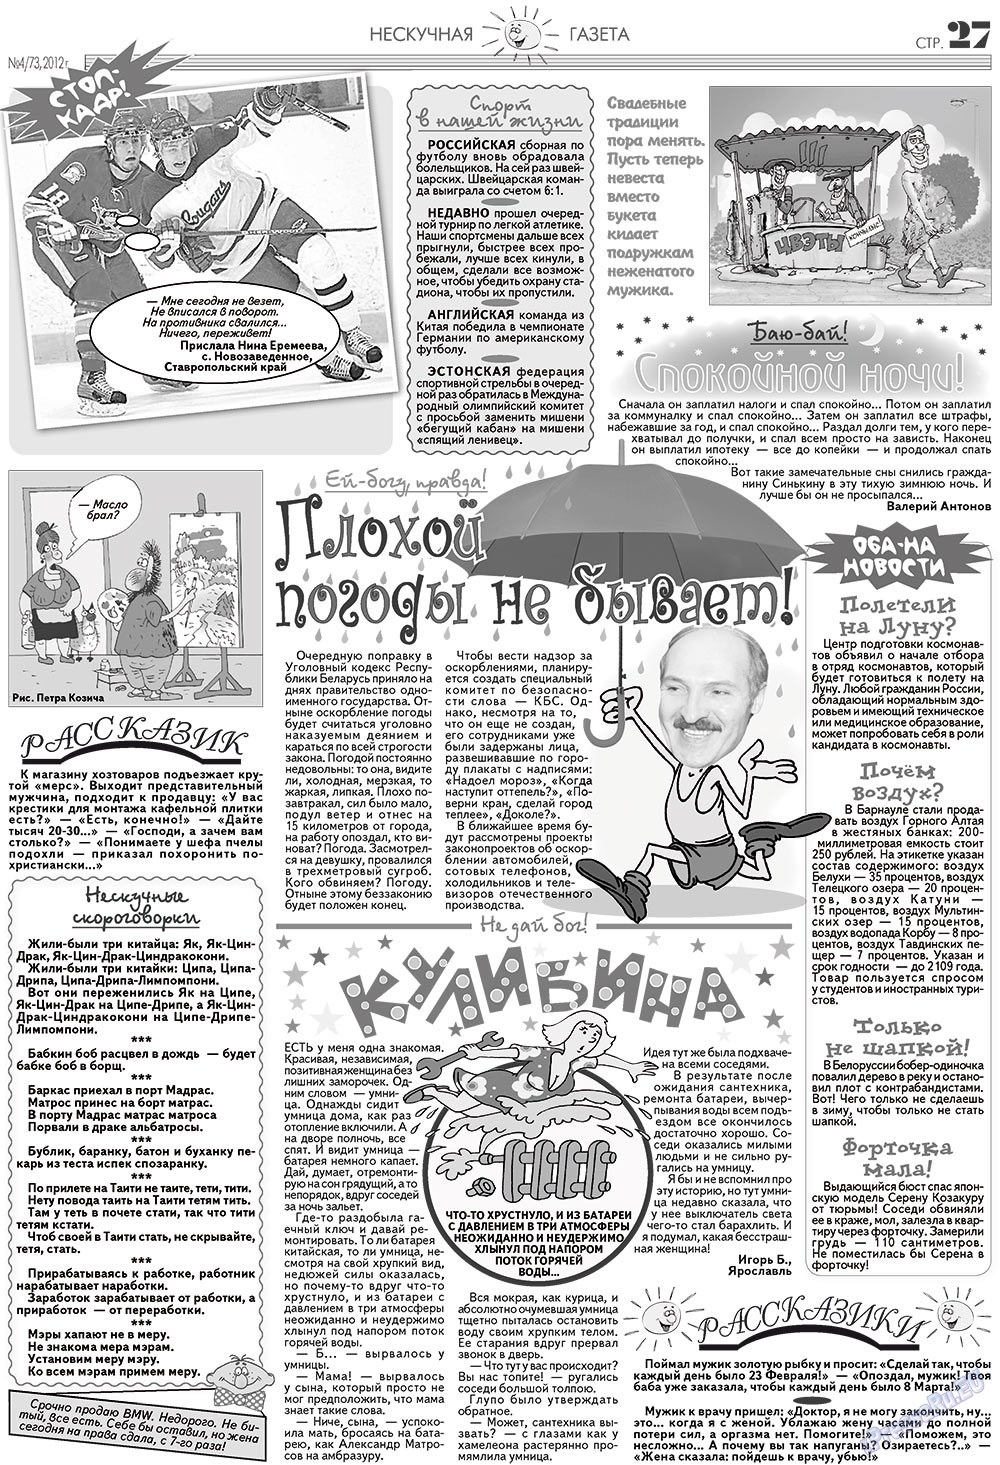 Нескучная газета (журнал). 2012 год, номер 4, стр. 27